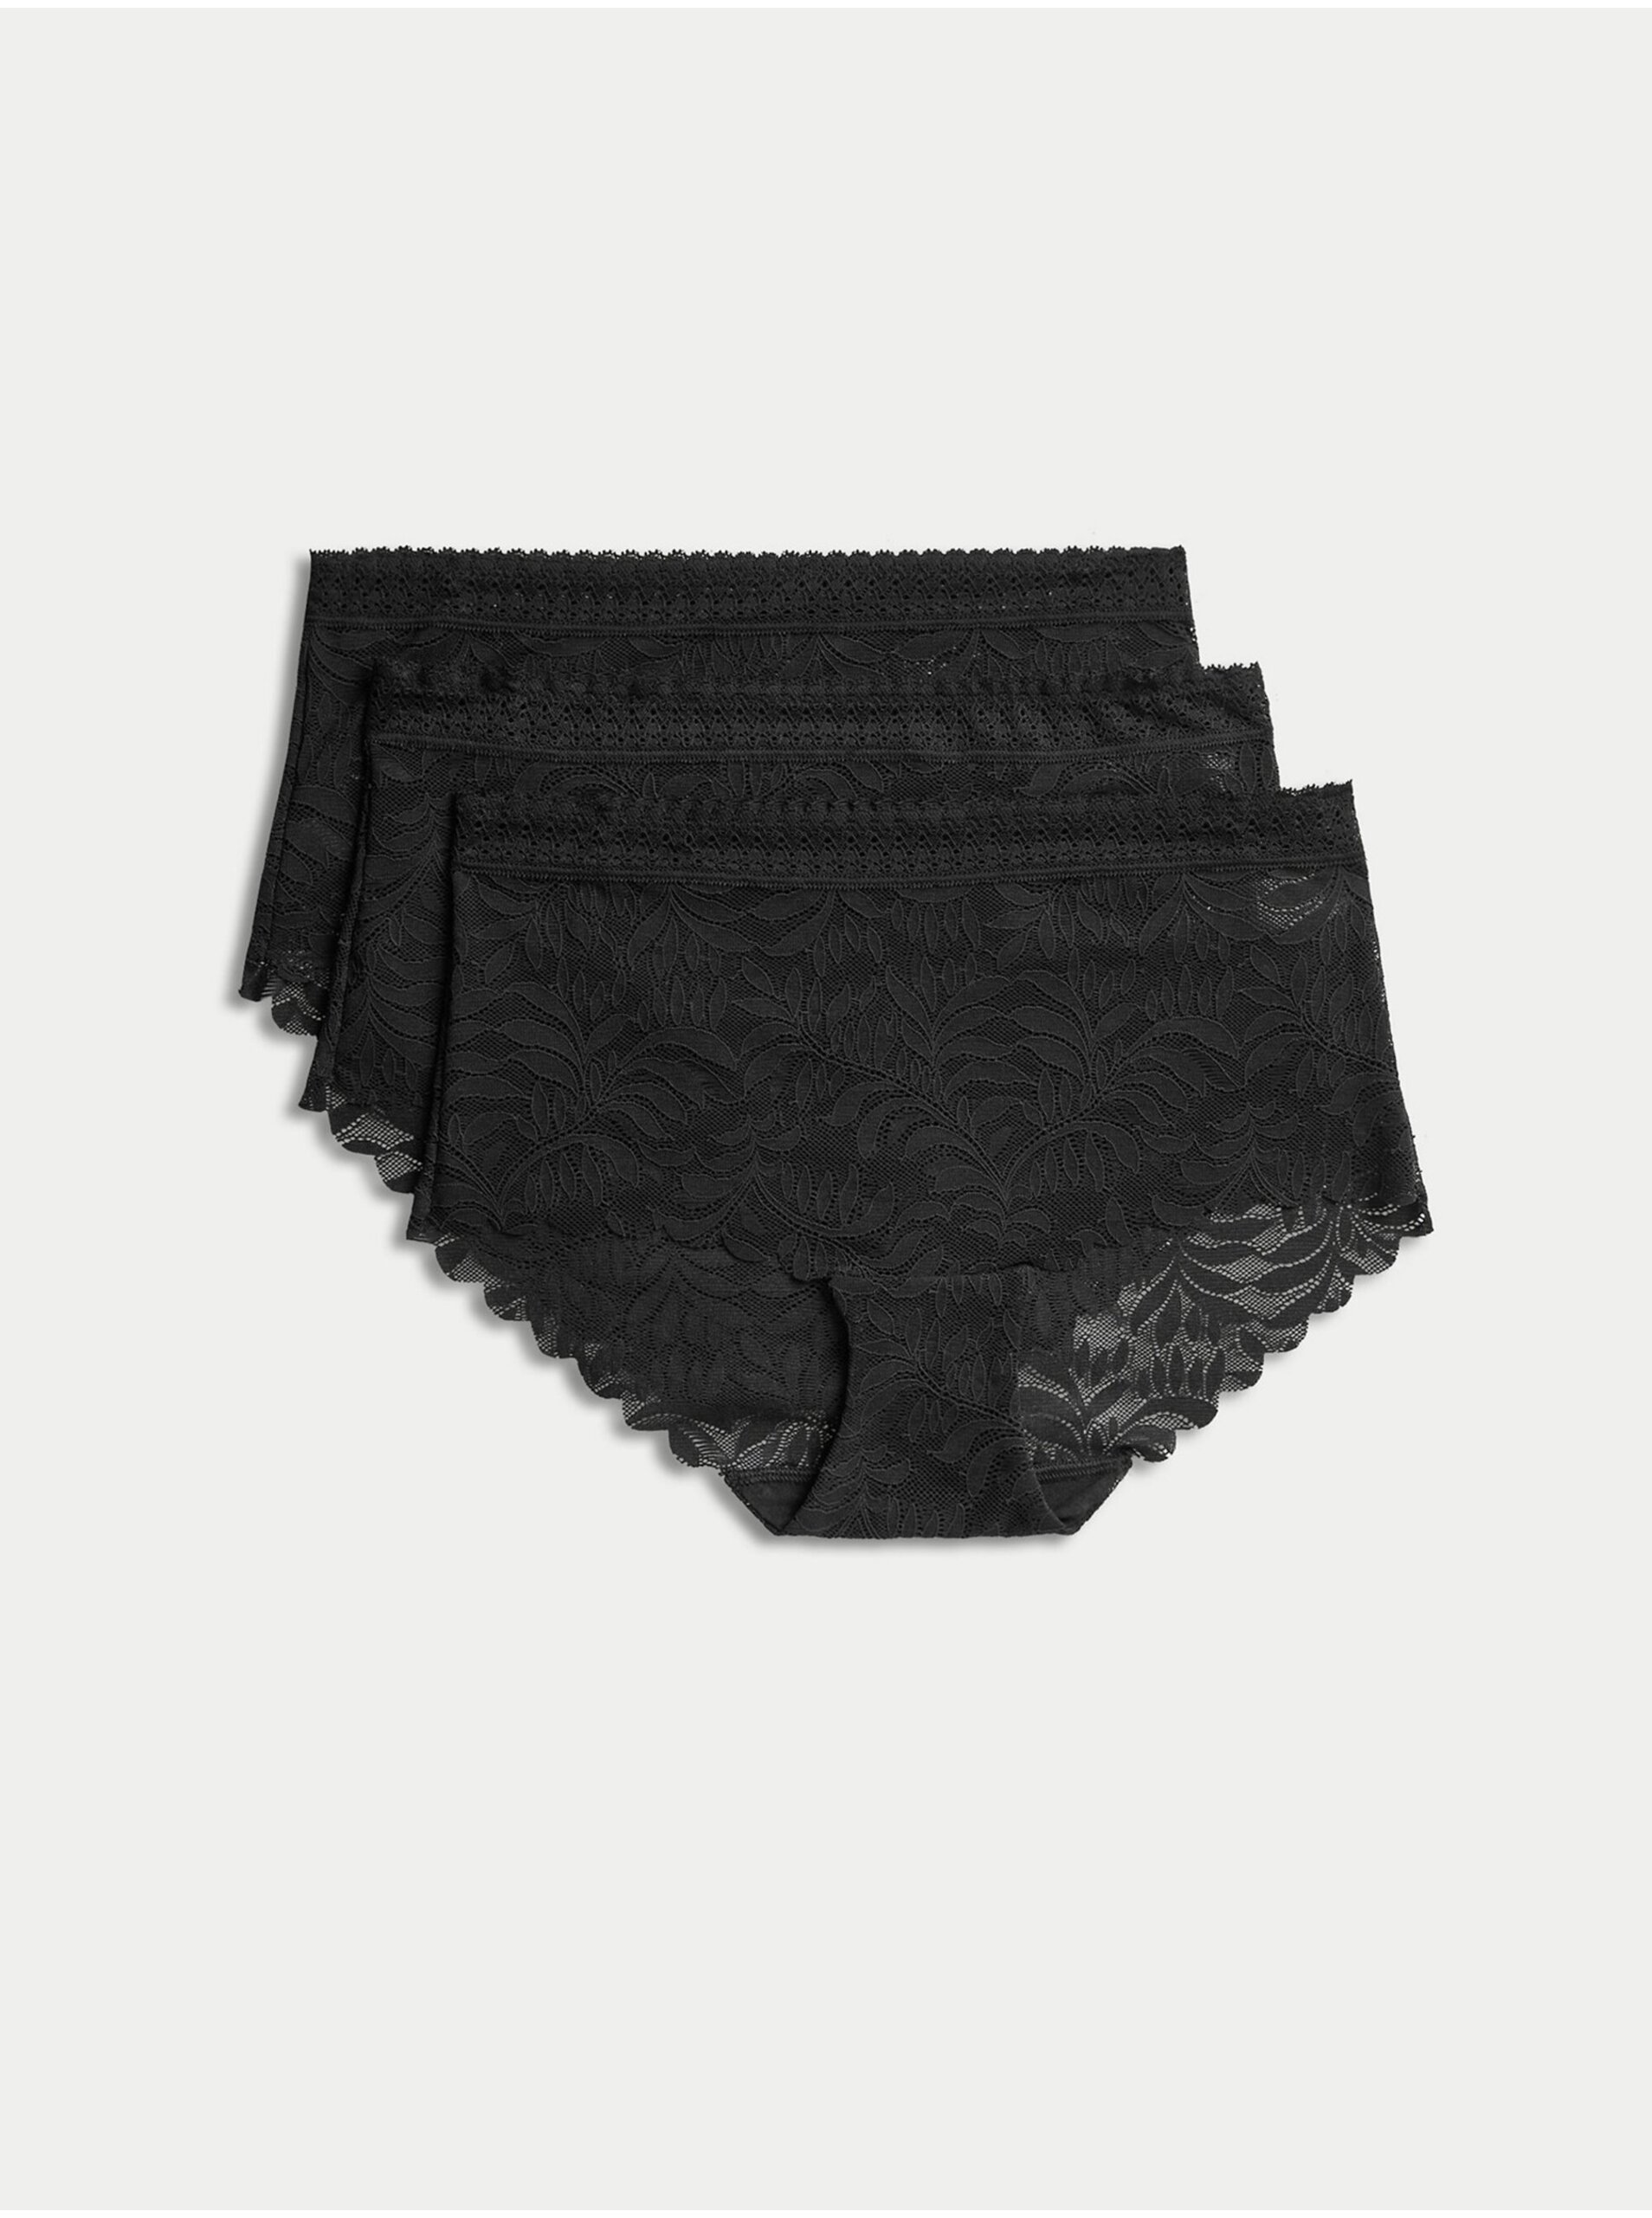 E-shop Sada tří dámských krajkových kalhotek s technologií Flexifit™ v černé barvě Marks & Spencer